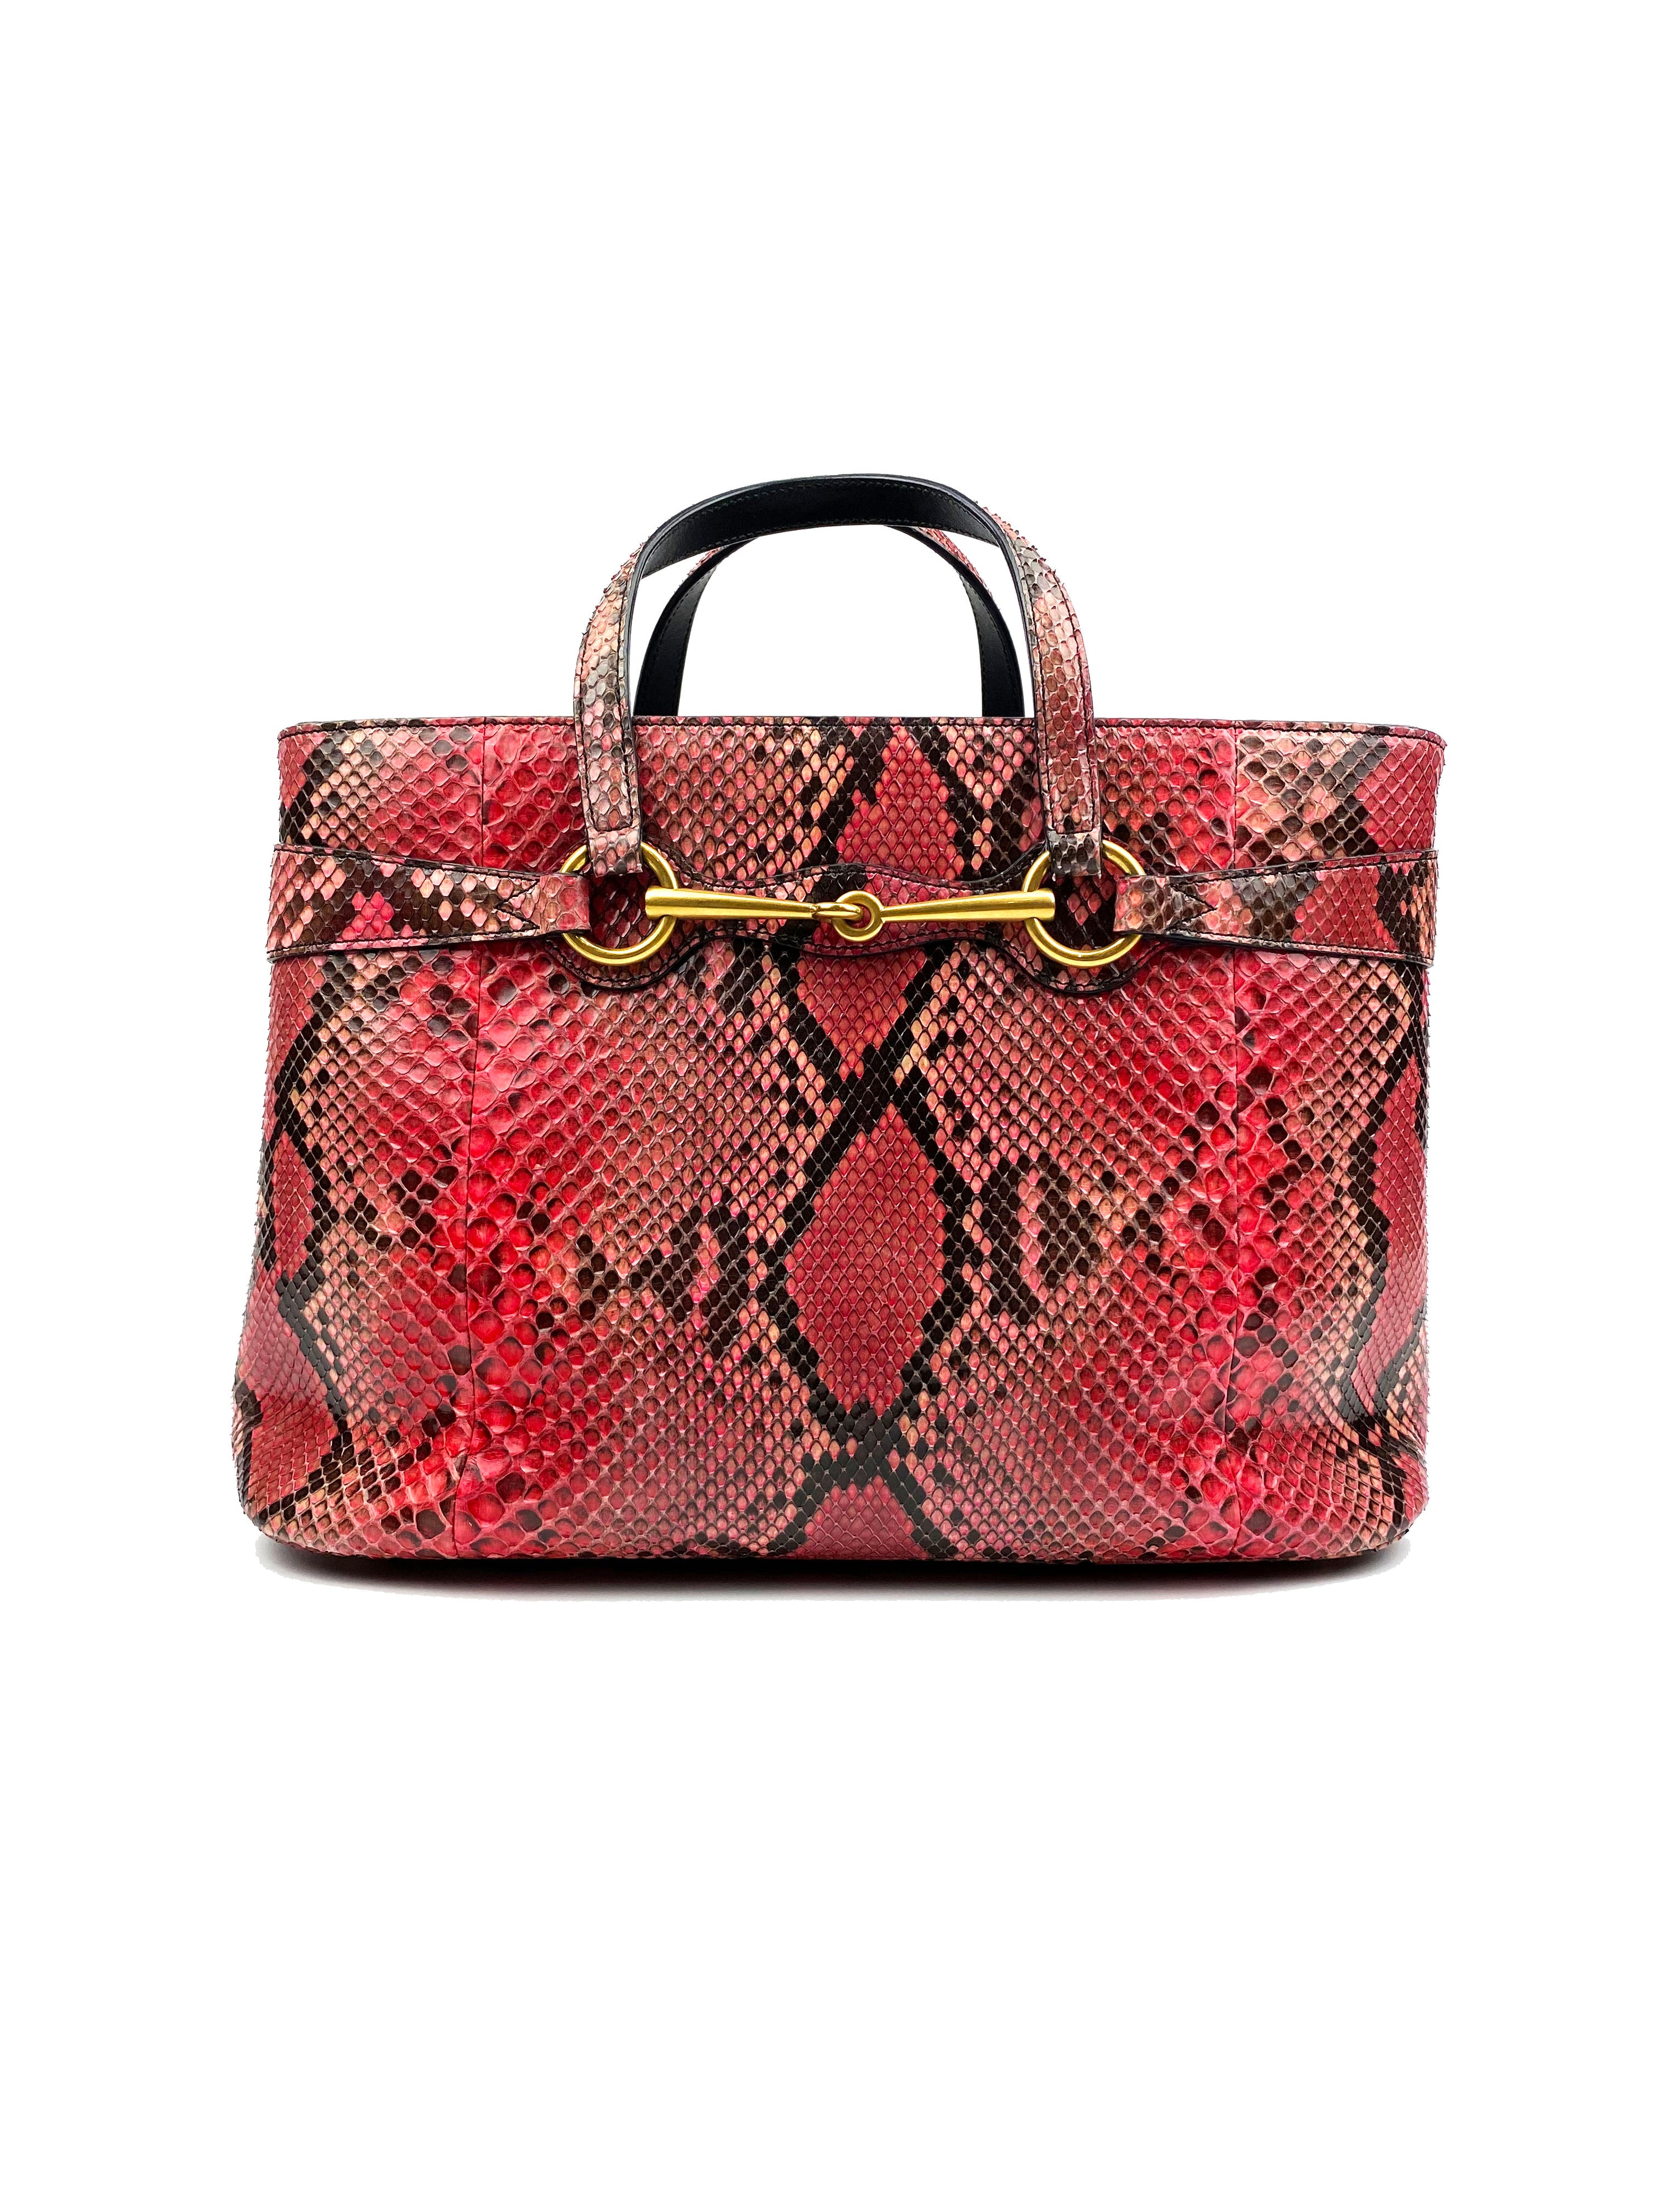 Gucci Begonia Pink Python Bag